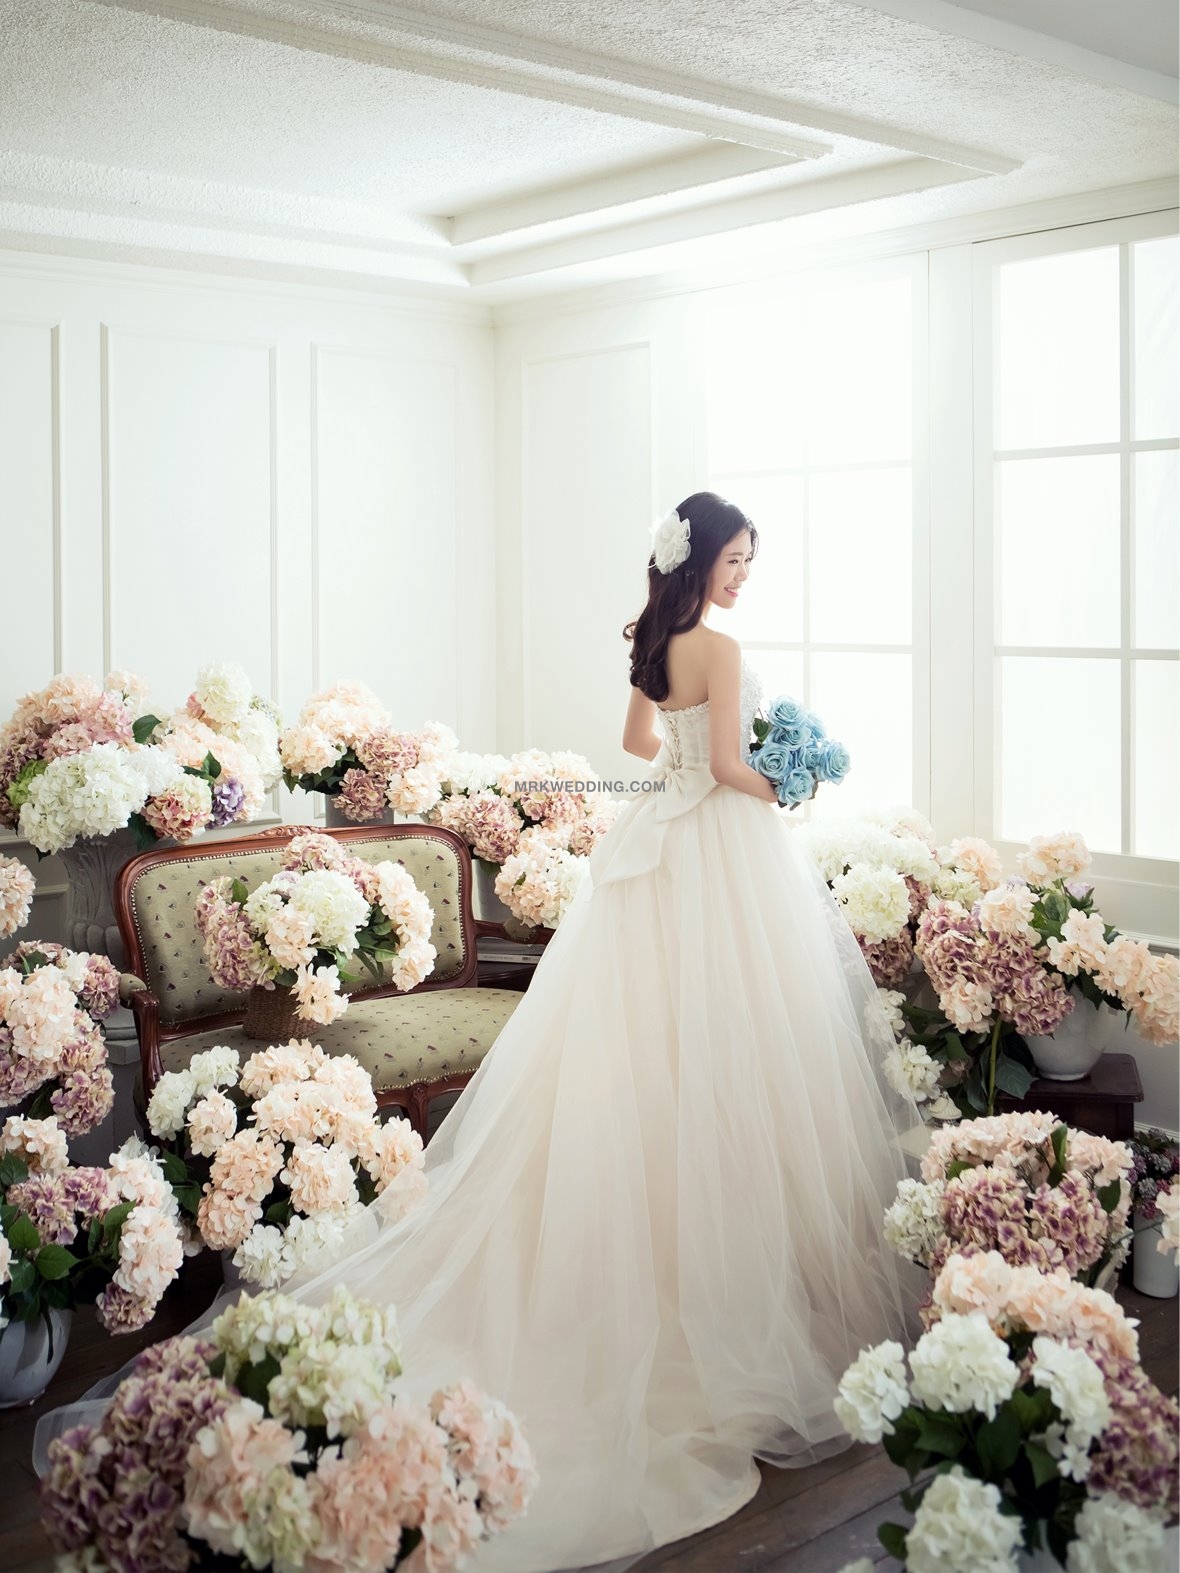 Korea pre wedding (6).jpg